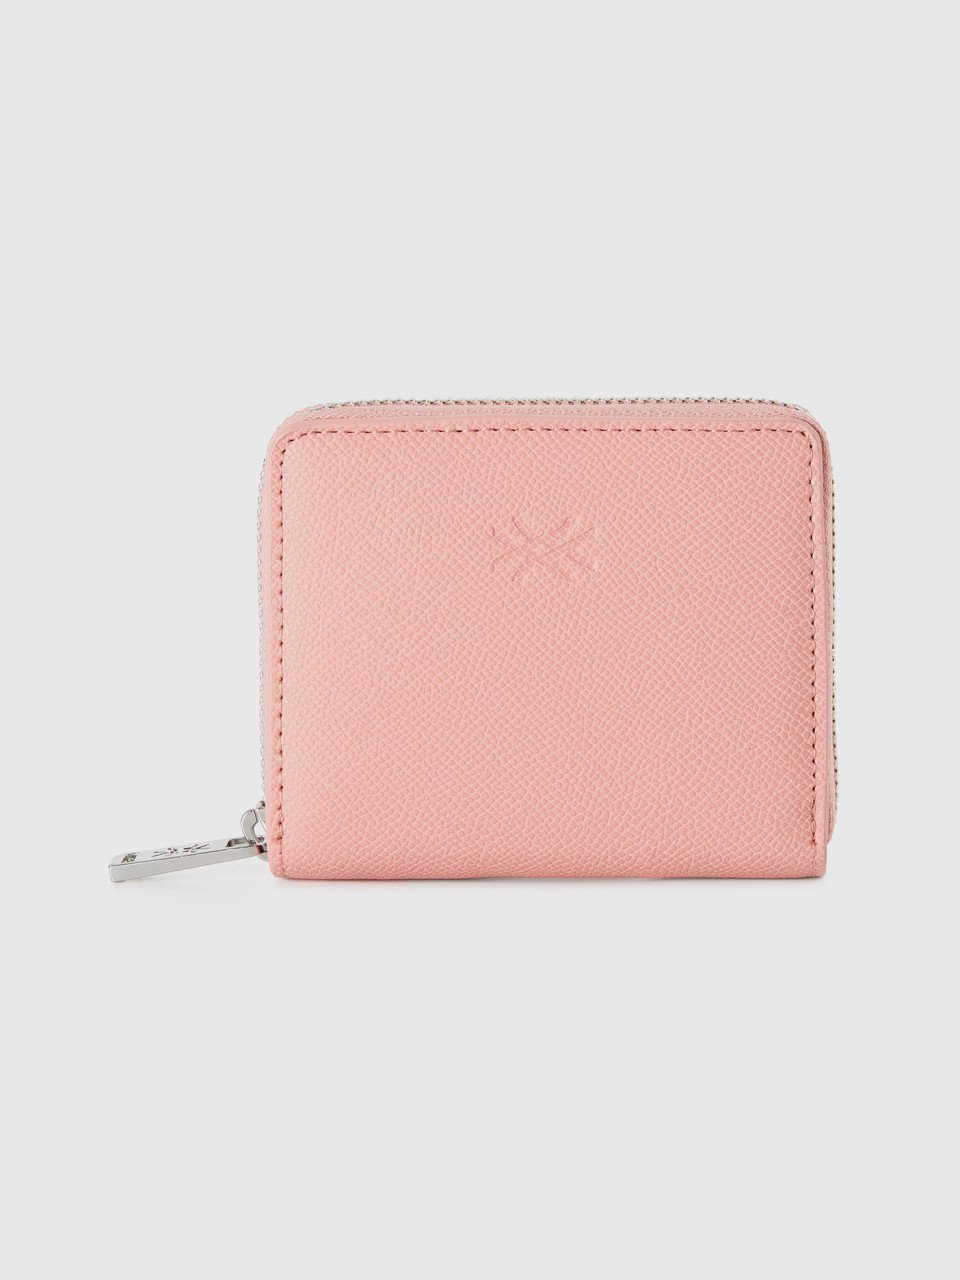 Benetton, Small Zip Wallet, Pink, Women